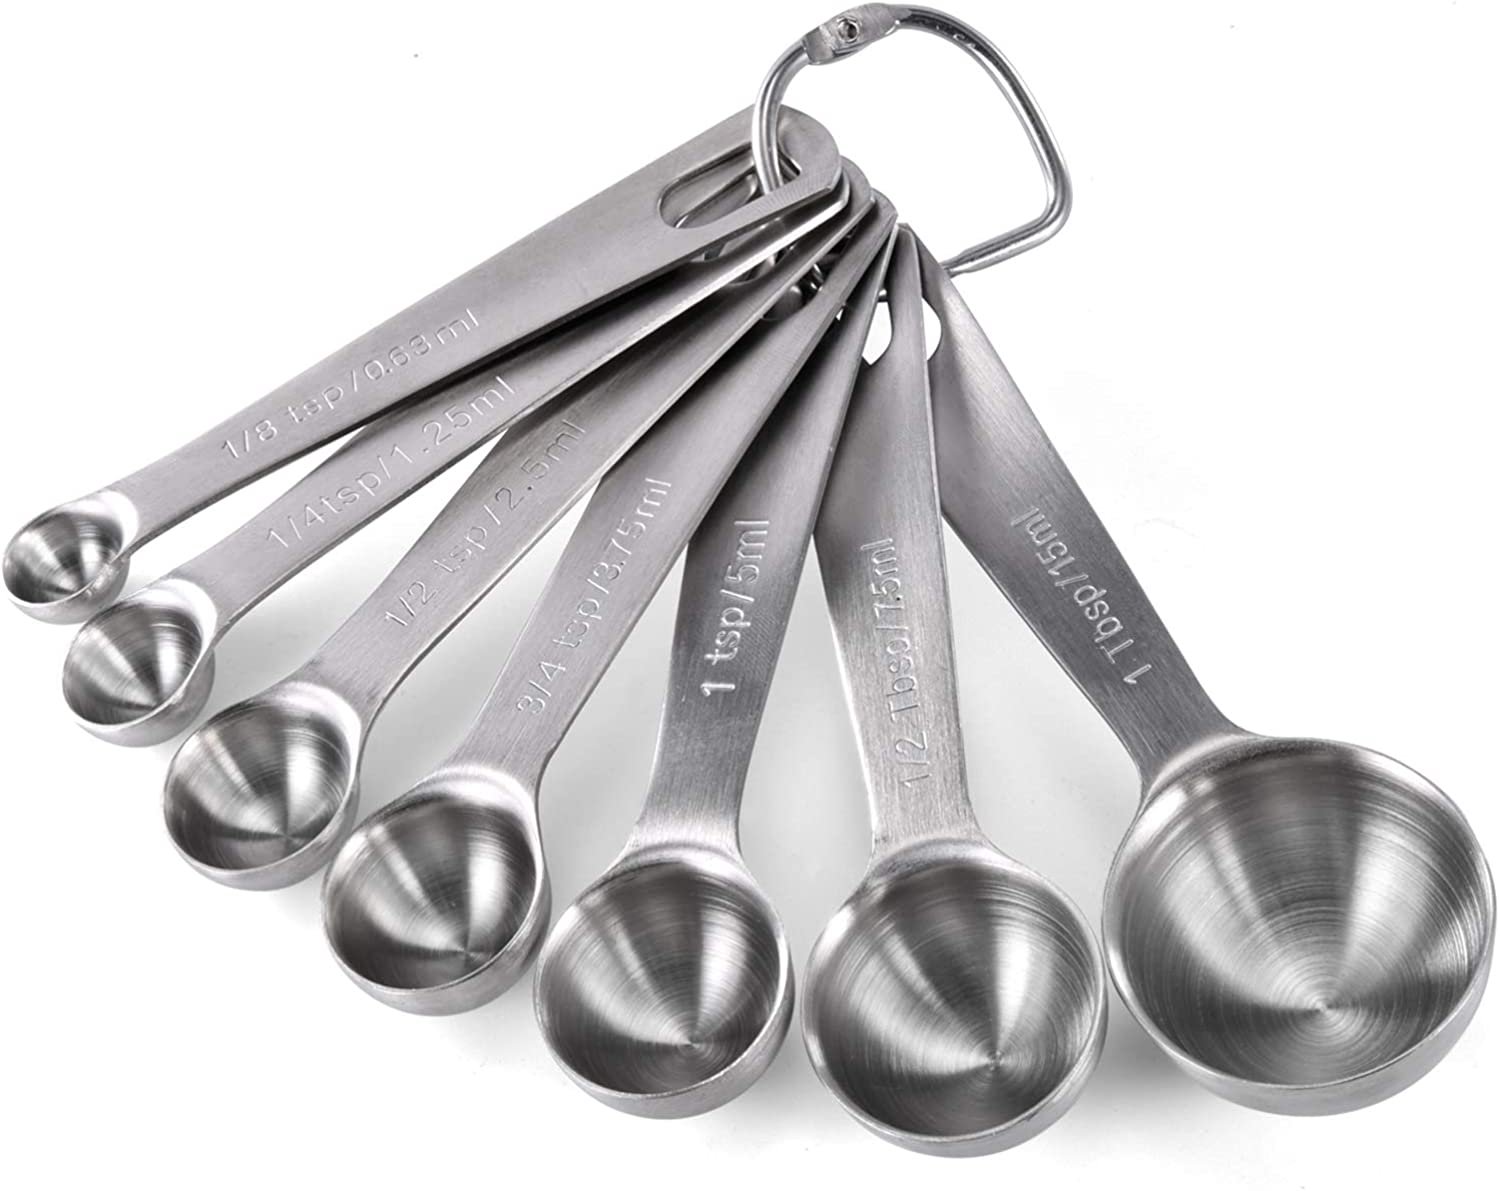 My Favorite Measuring Spoons